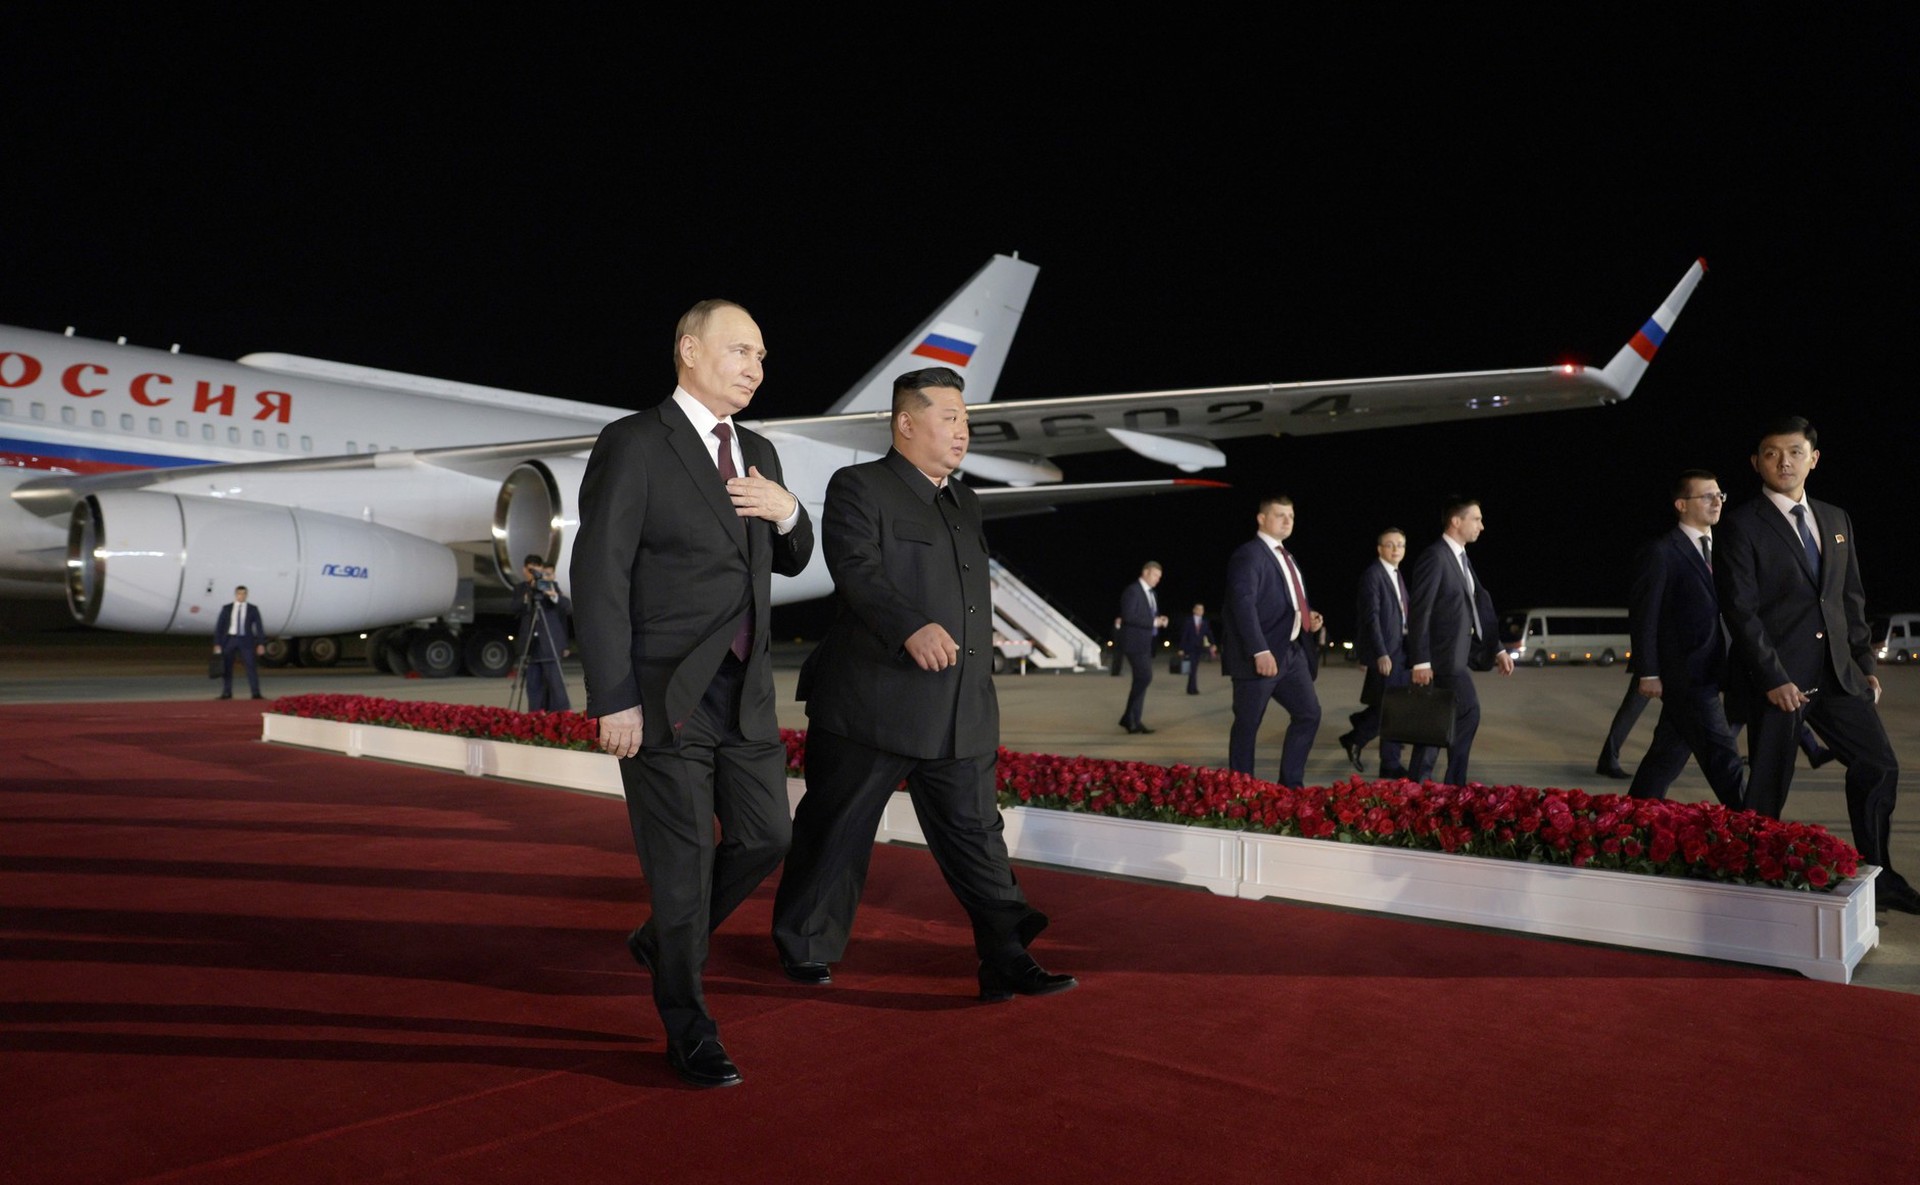 МИД Южной Кореи: Военное сотрудничество России и КНДР нарушает резолюции СБ ООН